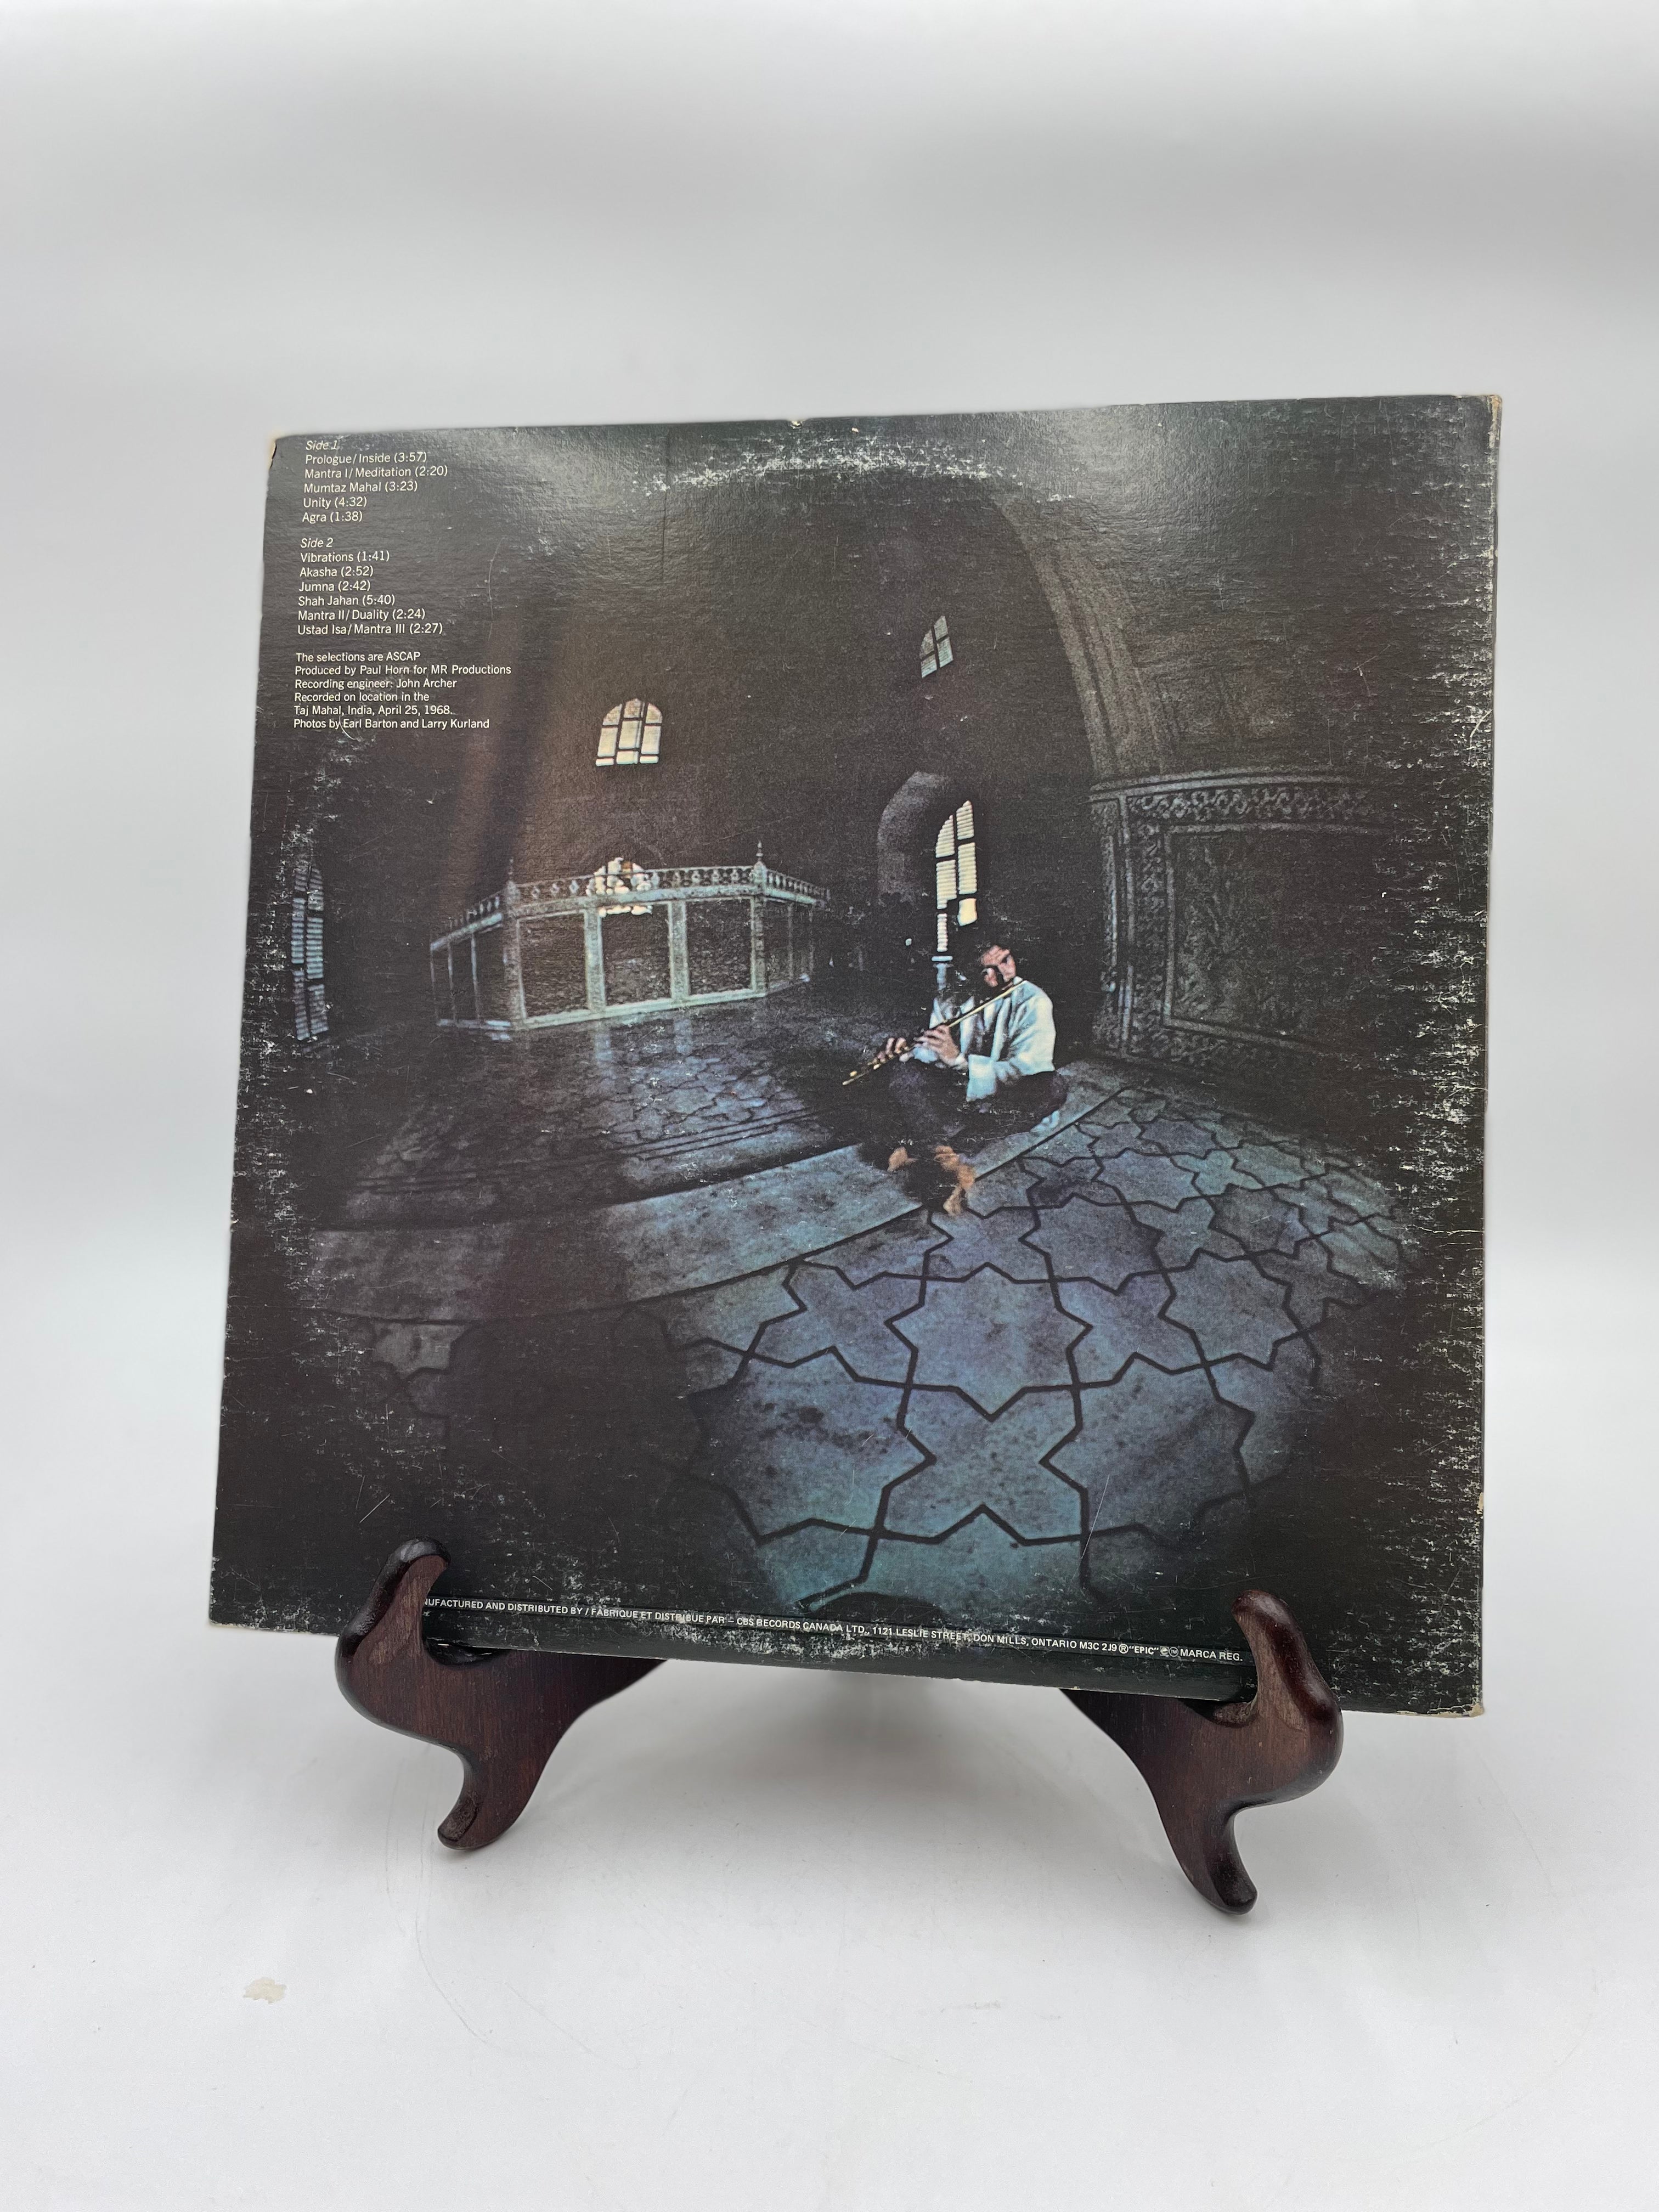 Paul Horn ‎– Inside - Disque vinyle (LP)